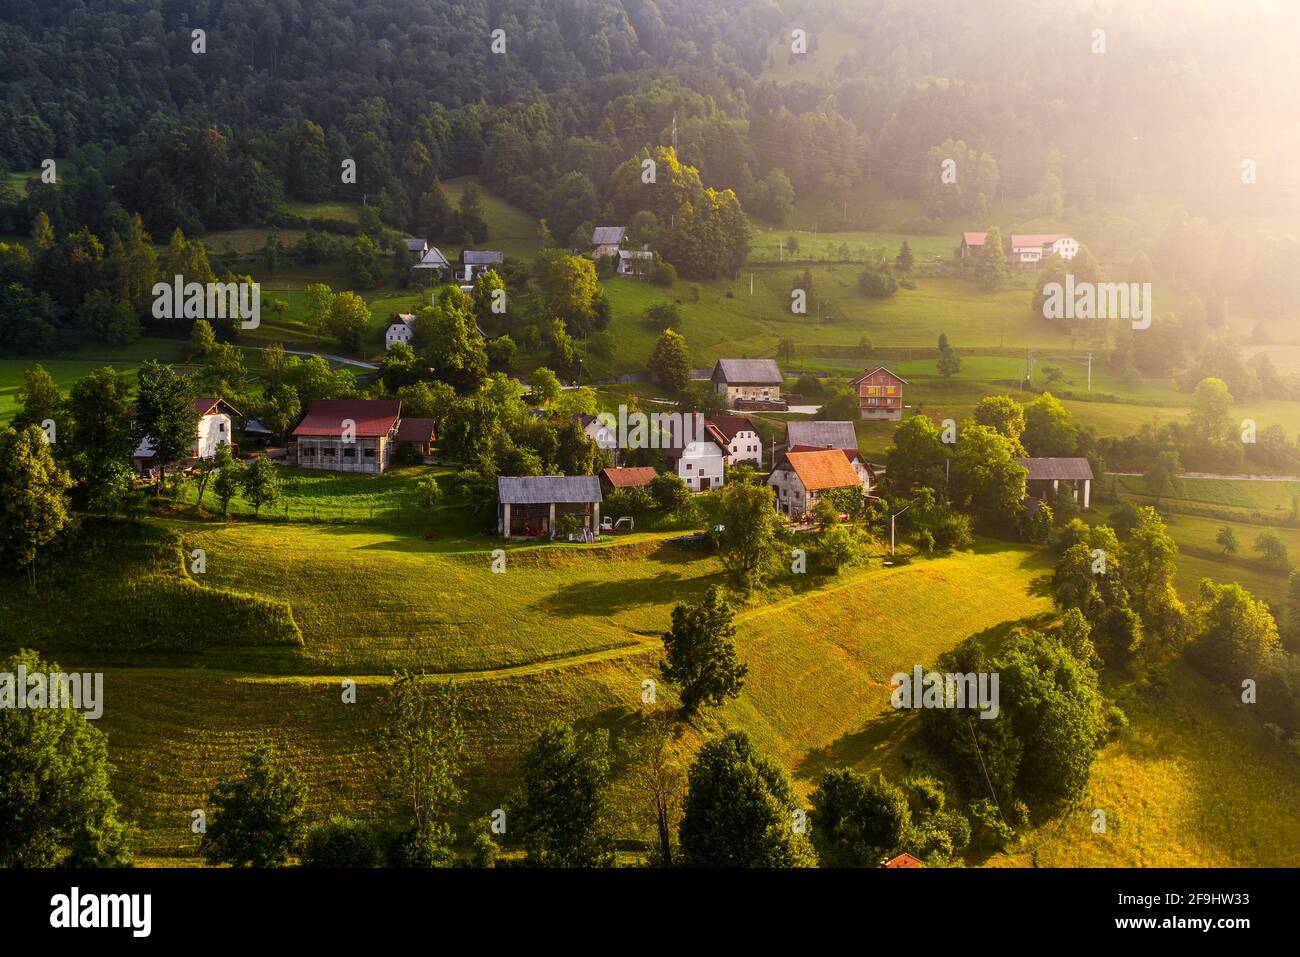 Bukovo, Slowenien - Luftaufnahme eines kleinen Bergdorfes in den slowenischen alpen bei Bukovo an einem sonnigen Sommermorgen. Warme Farben, lange Schatten und V Stockfoto